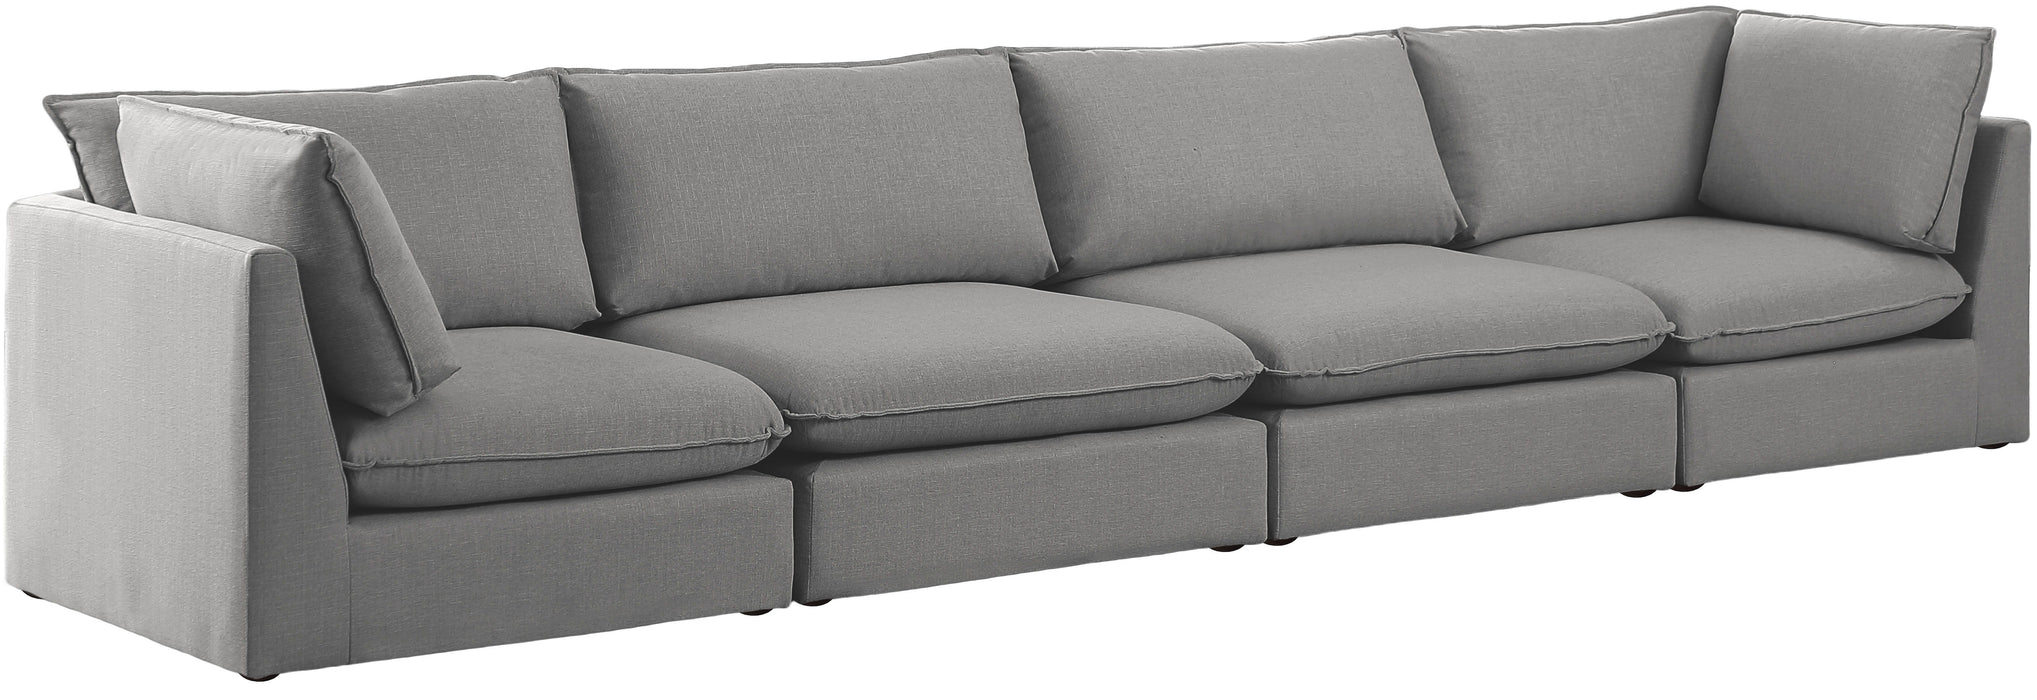 Mackenzie - Modular Sofa 4 Seats